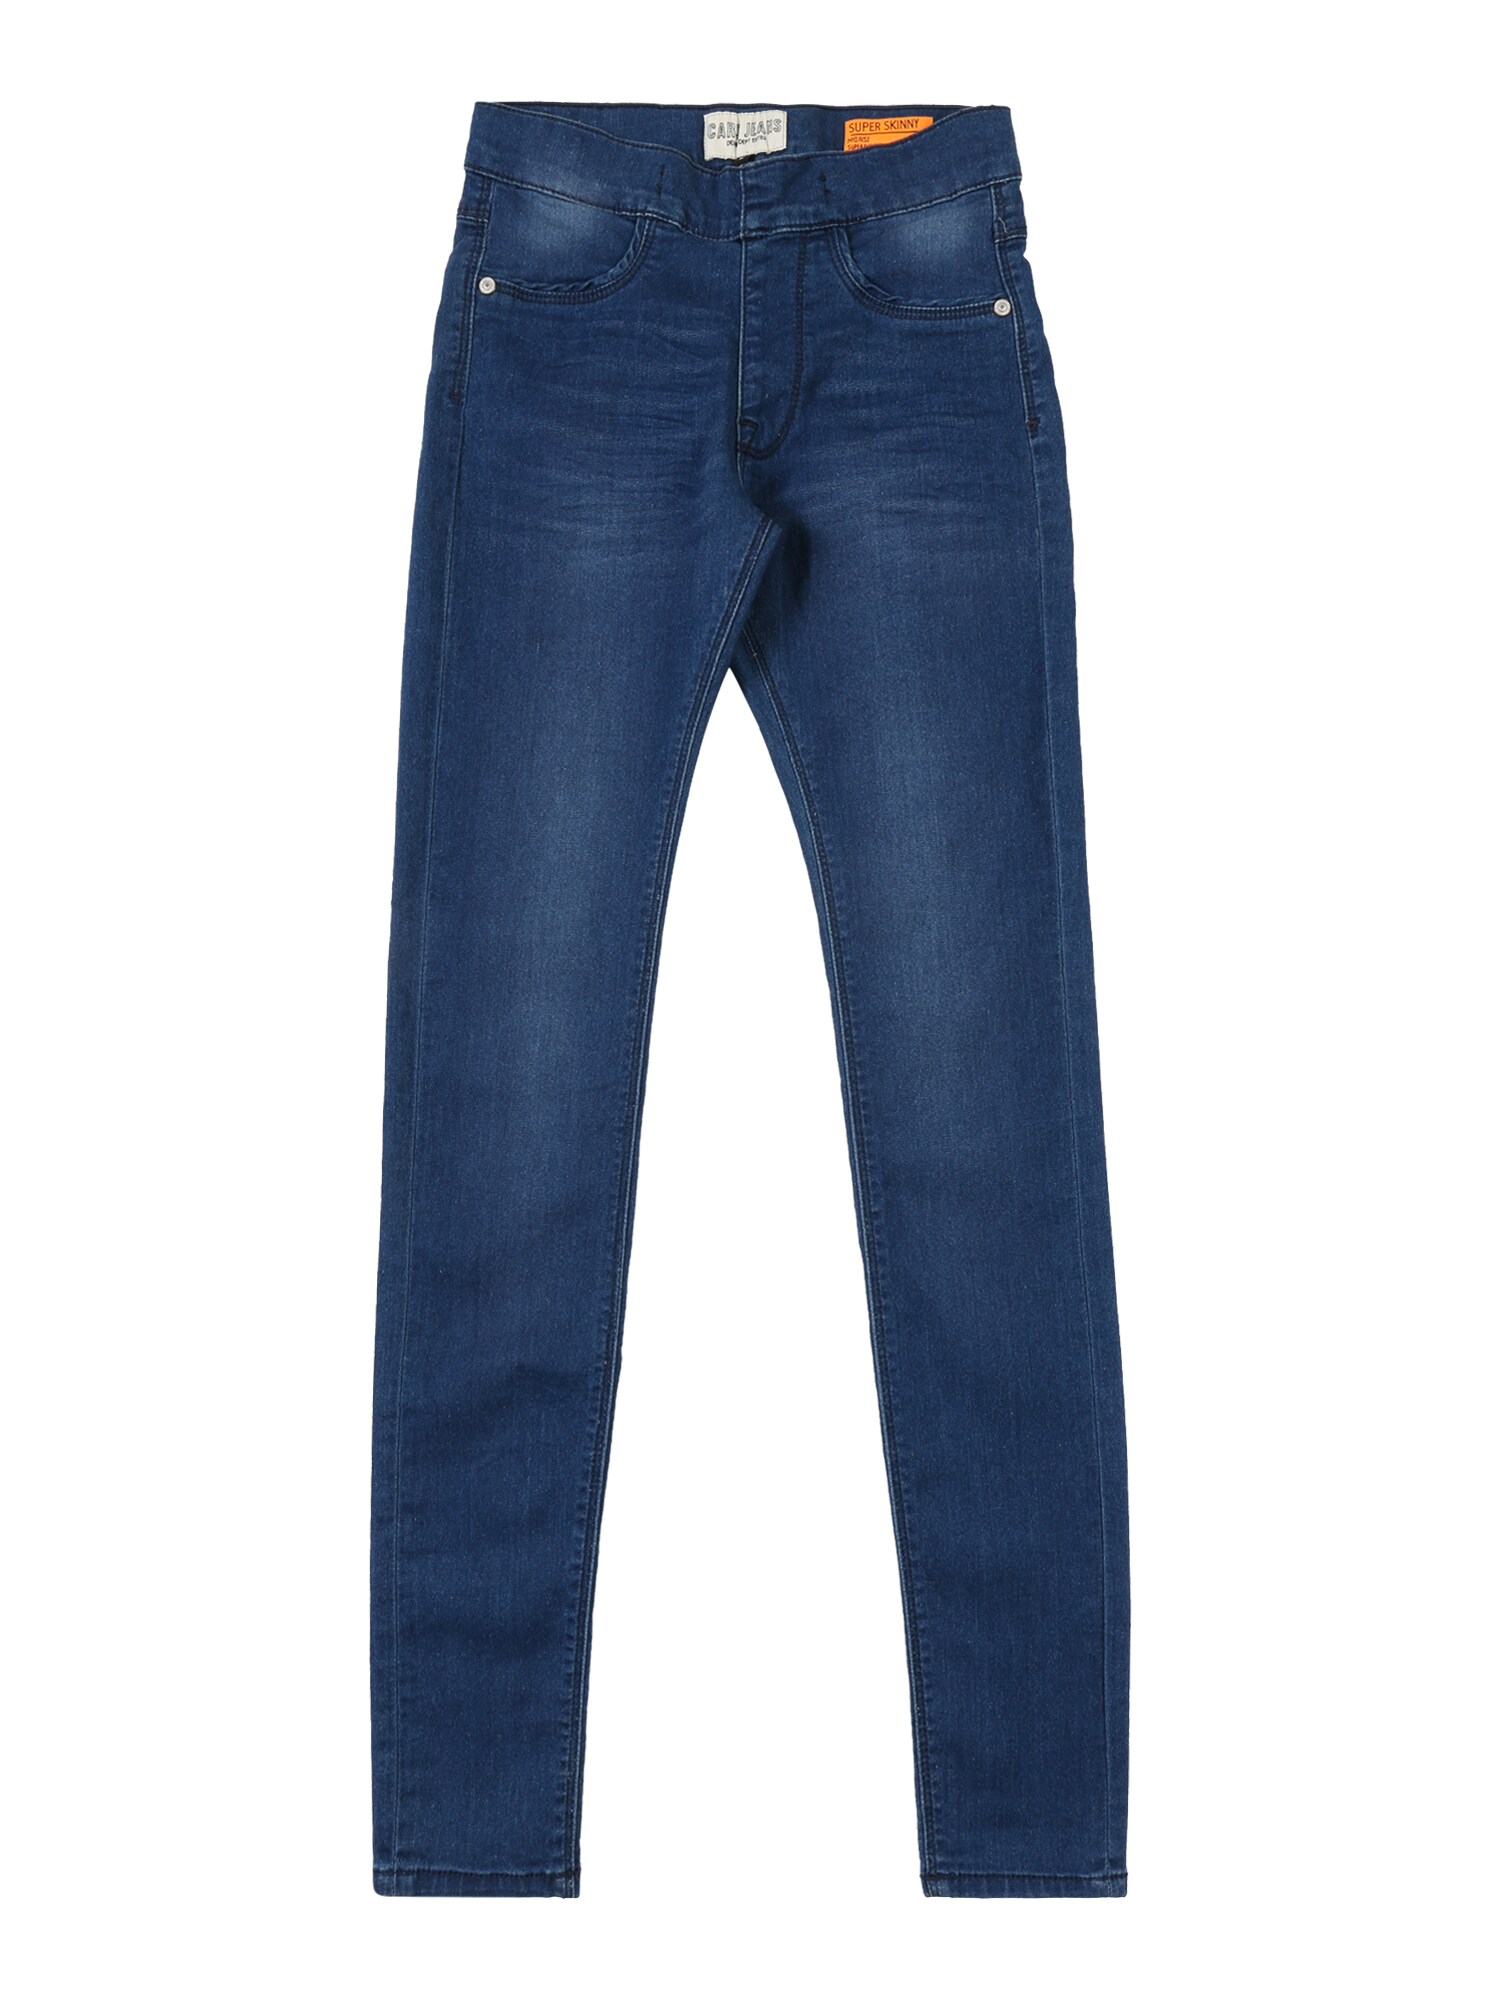 Cars Jeans Džinsai  tamsiai (džinso) mėlyna